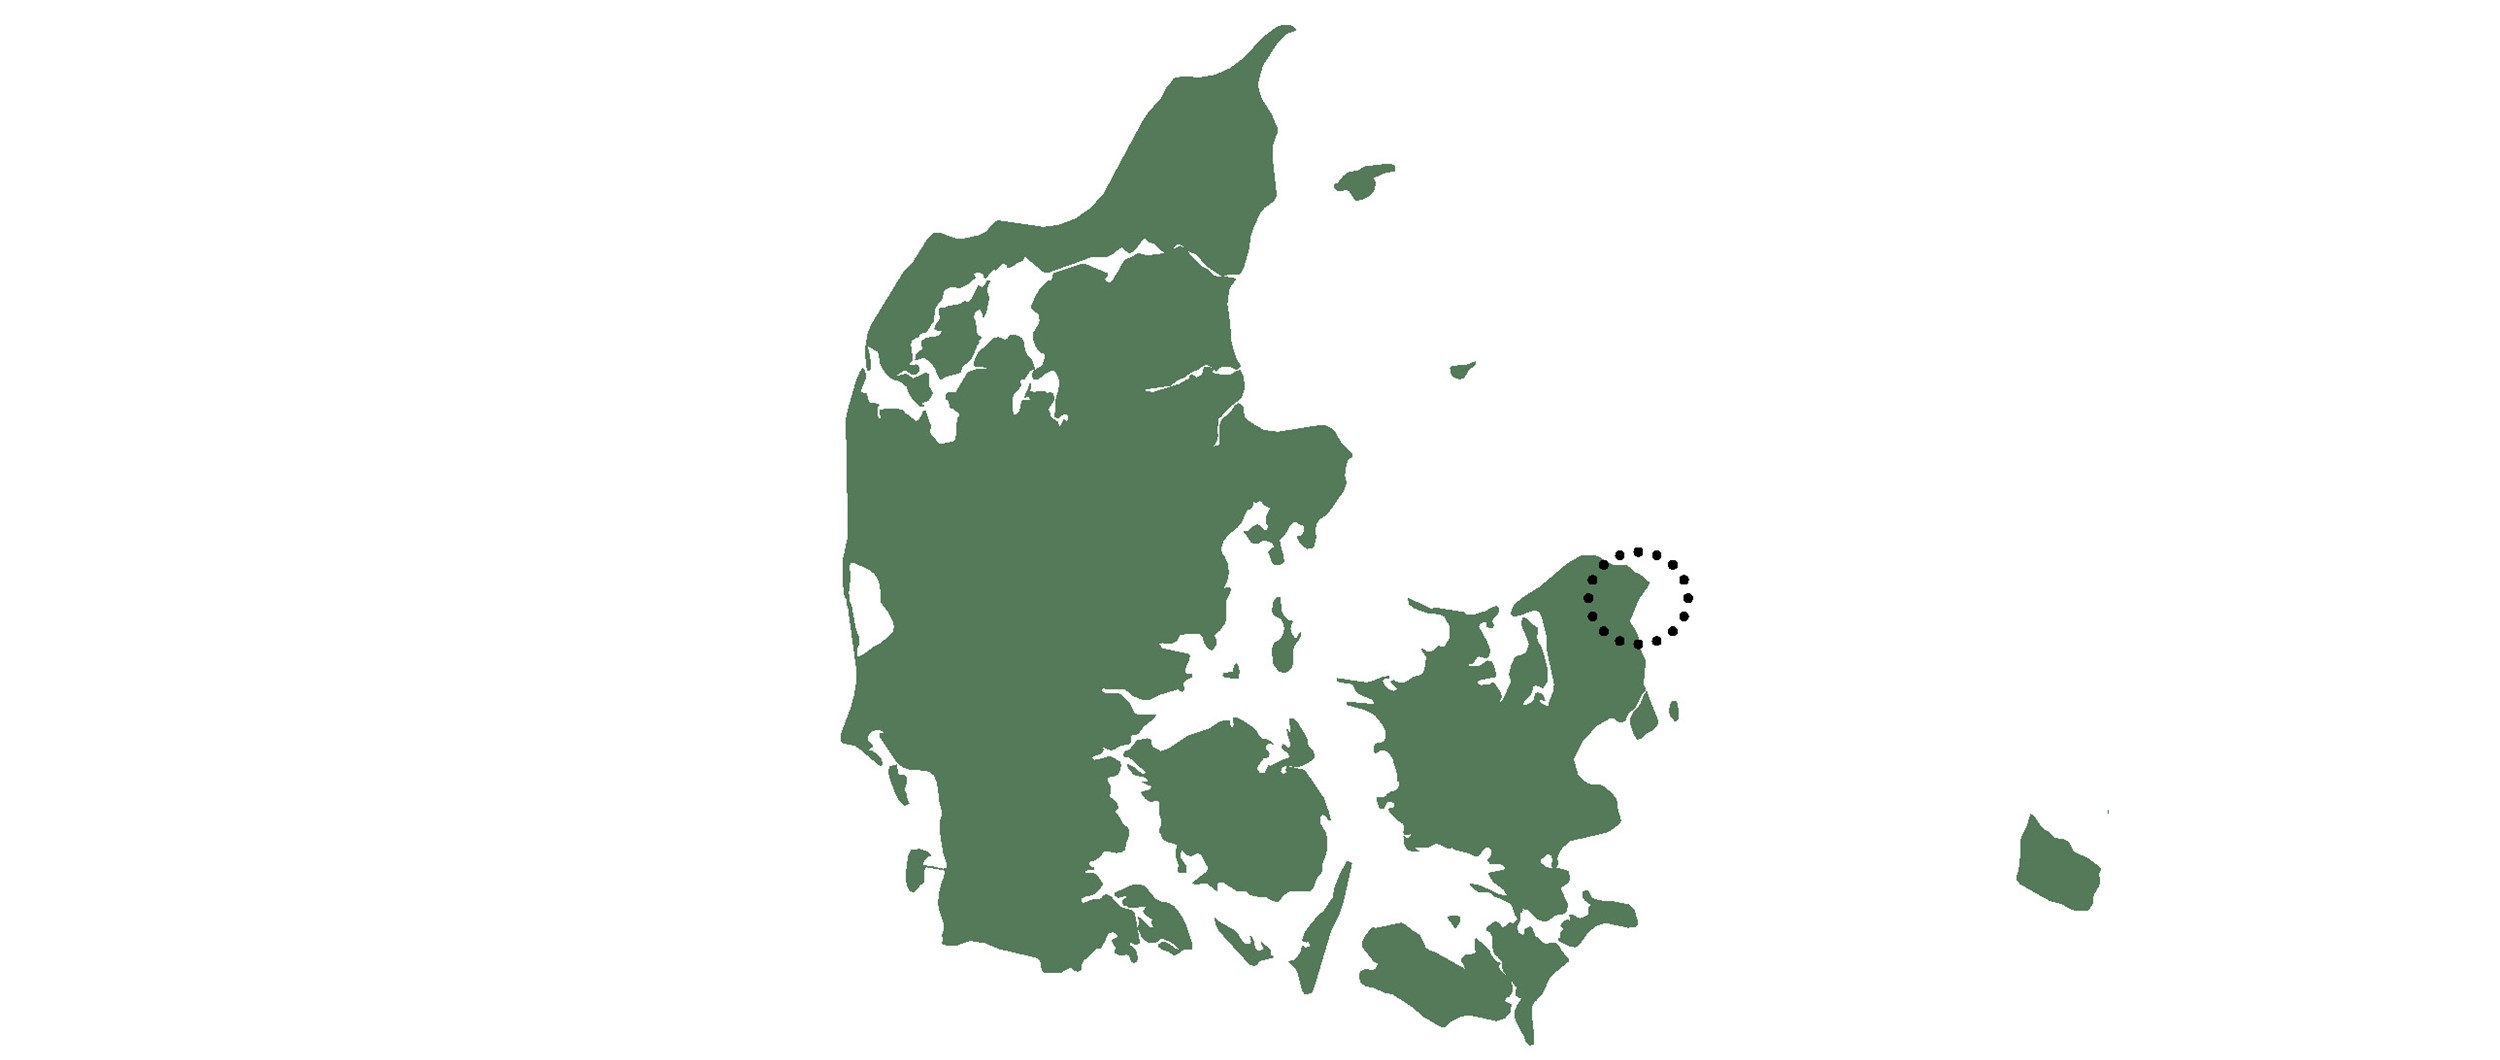 Projektet er beliggende i Snekkersten, en lille forstad til Helsingør.